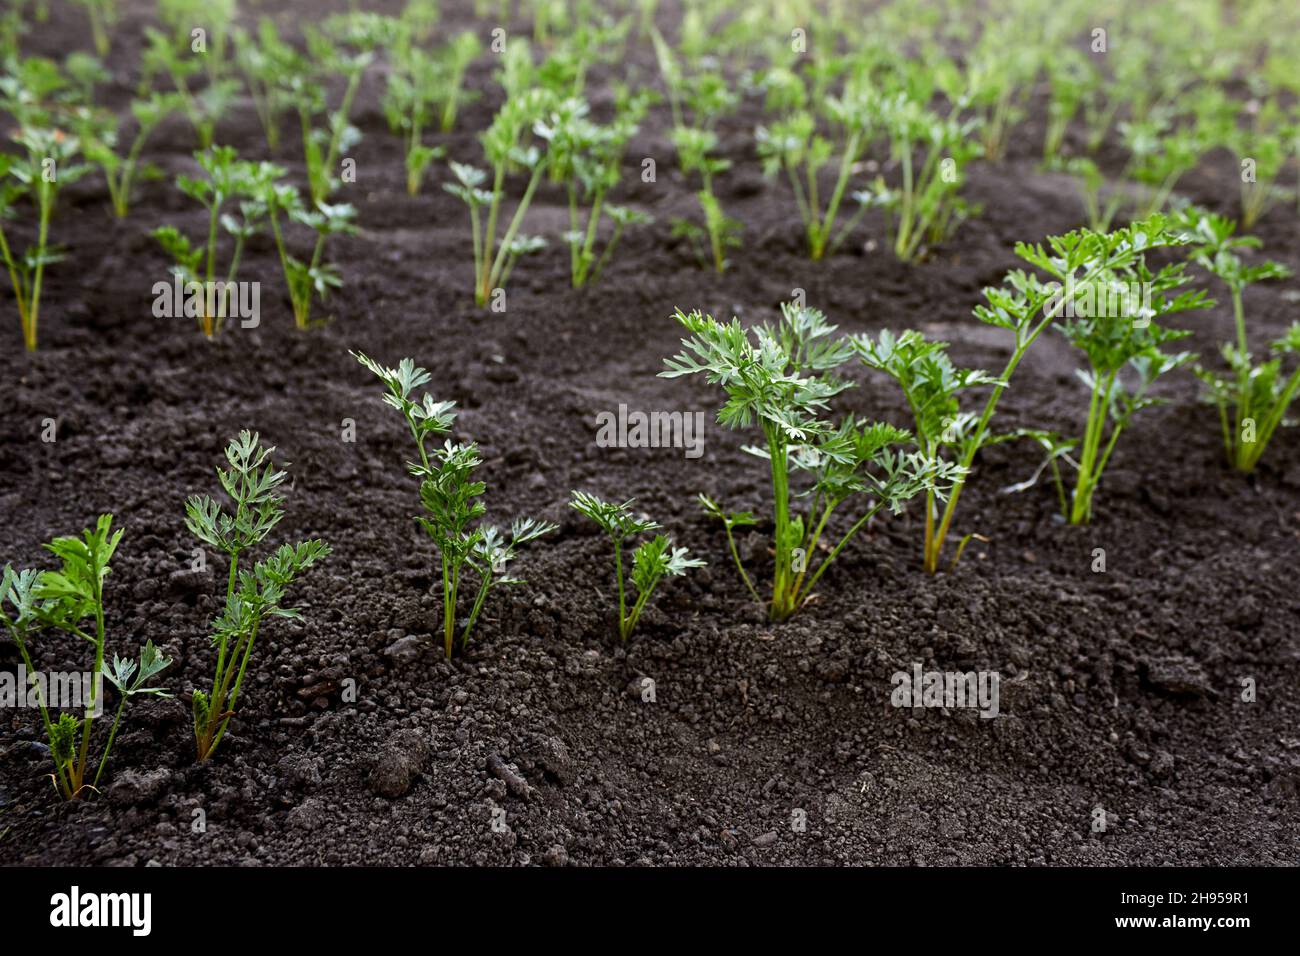 Junge Karottenpflanze, die auf einem Gemüsebett aus dem Boden sprießt. Junge Karotten-Setzlinge auf dem Bauernhof. Karottenoberteile. Das Thema Gartenarbeit, Landwirtschaft. Stockfoto